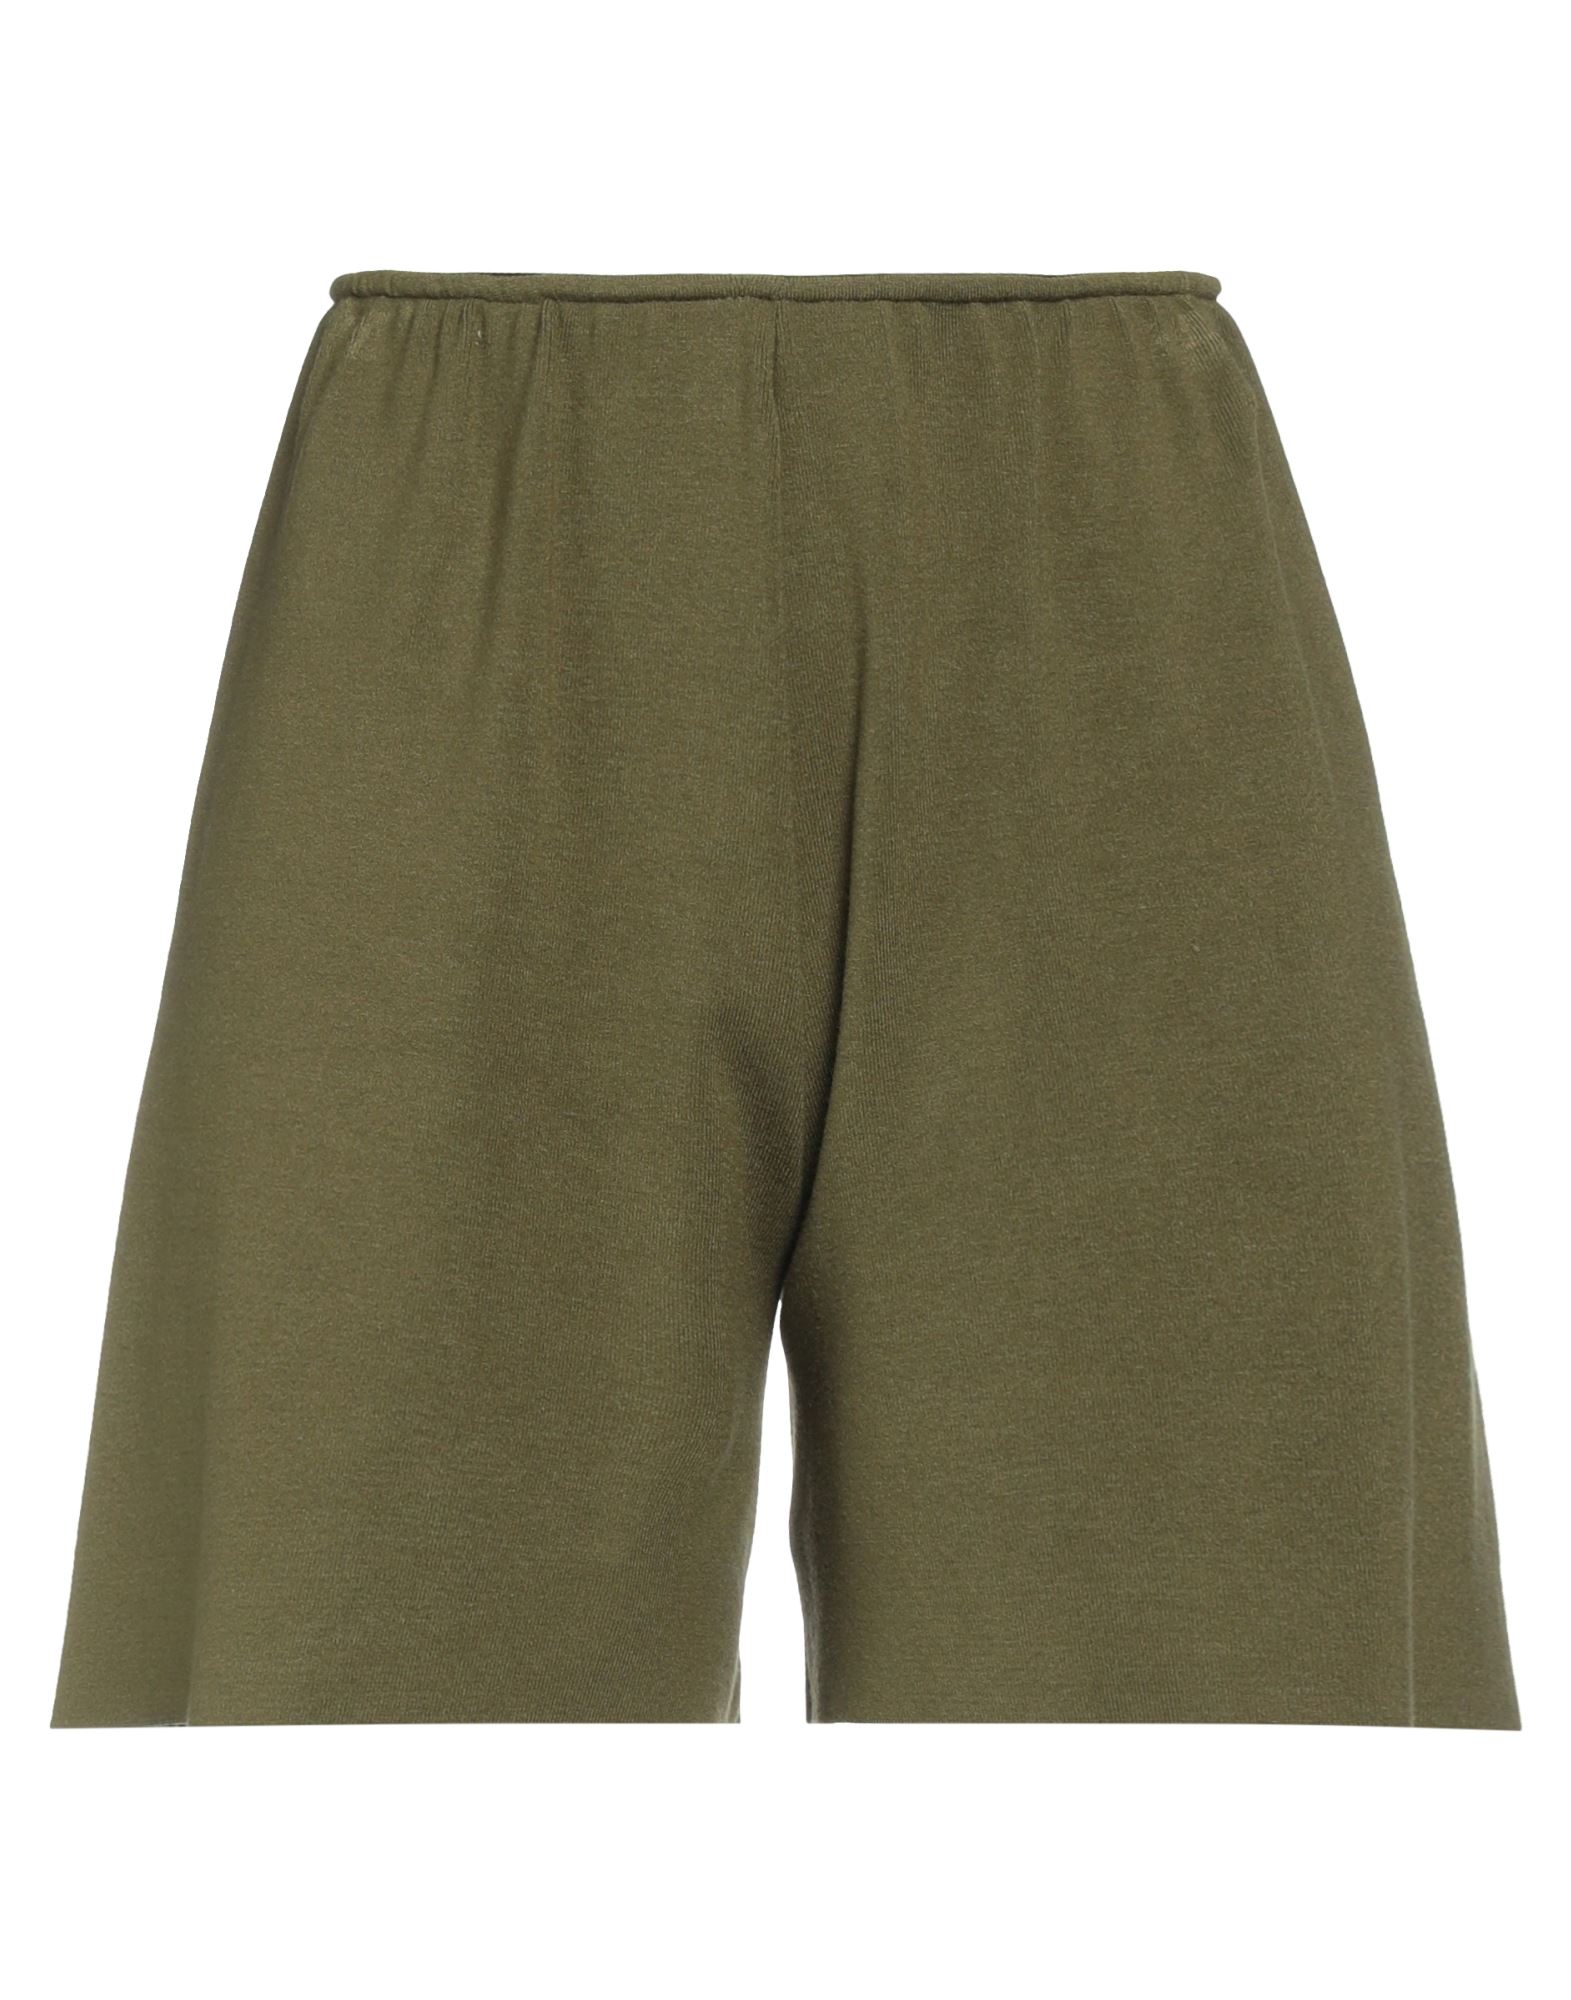 Kaos Woman Shorts & Bermuda Shorts Military Green Size M Viscose, Polyester